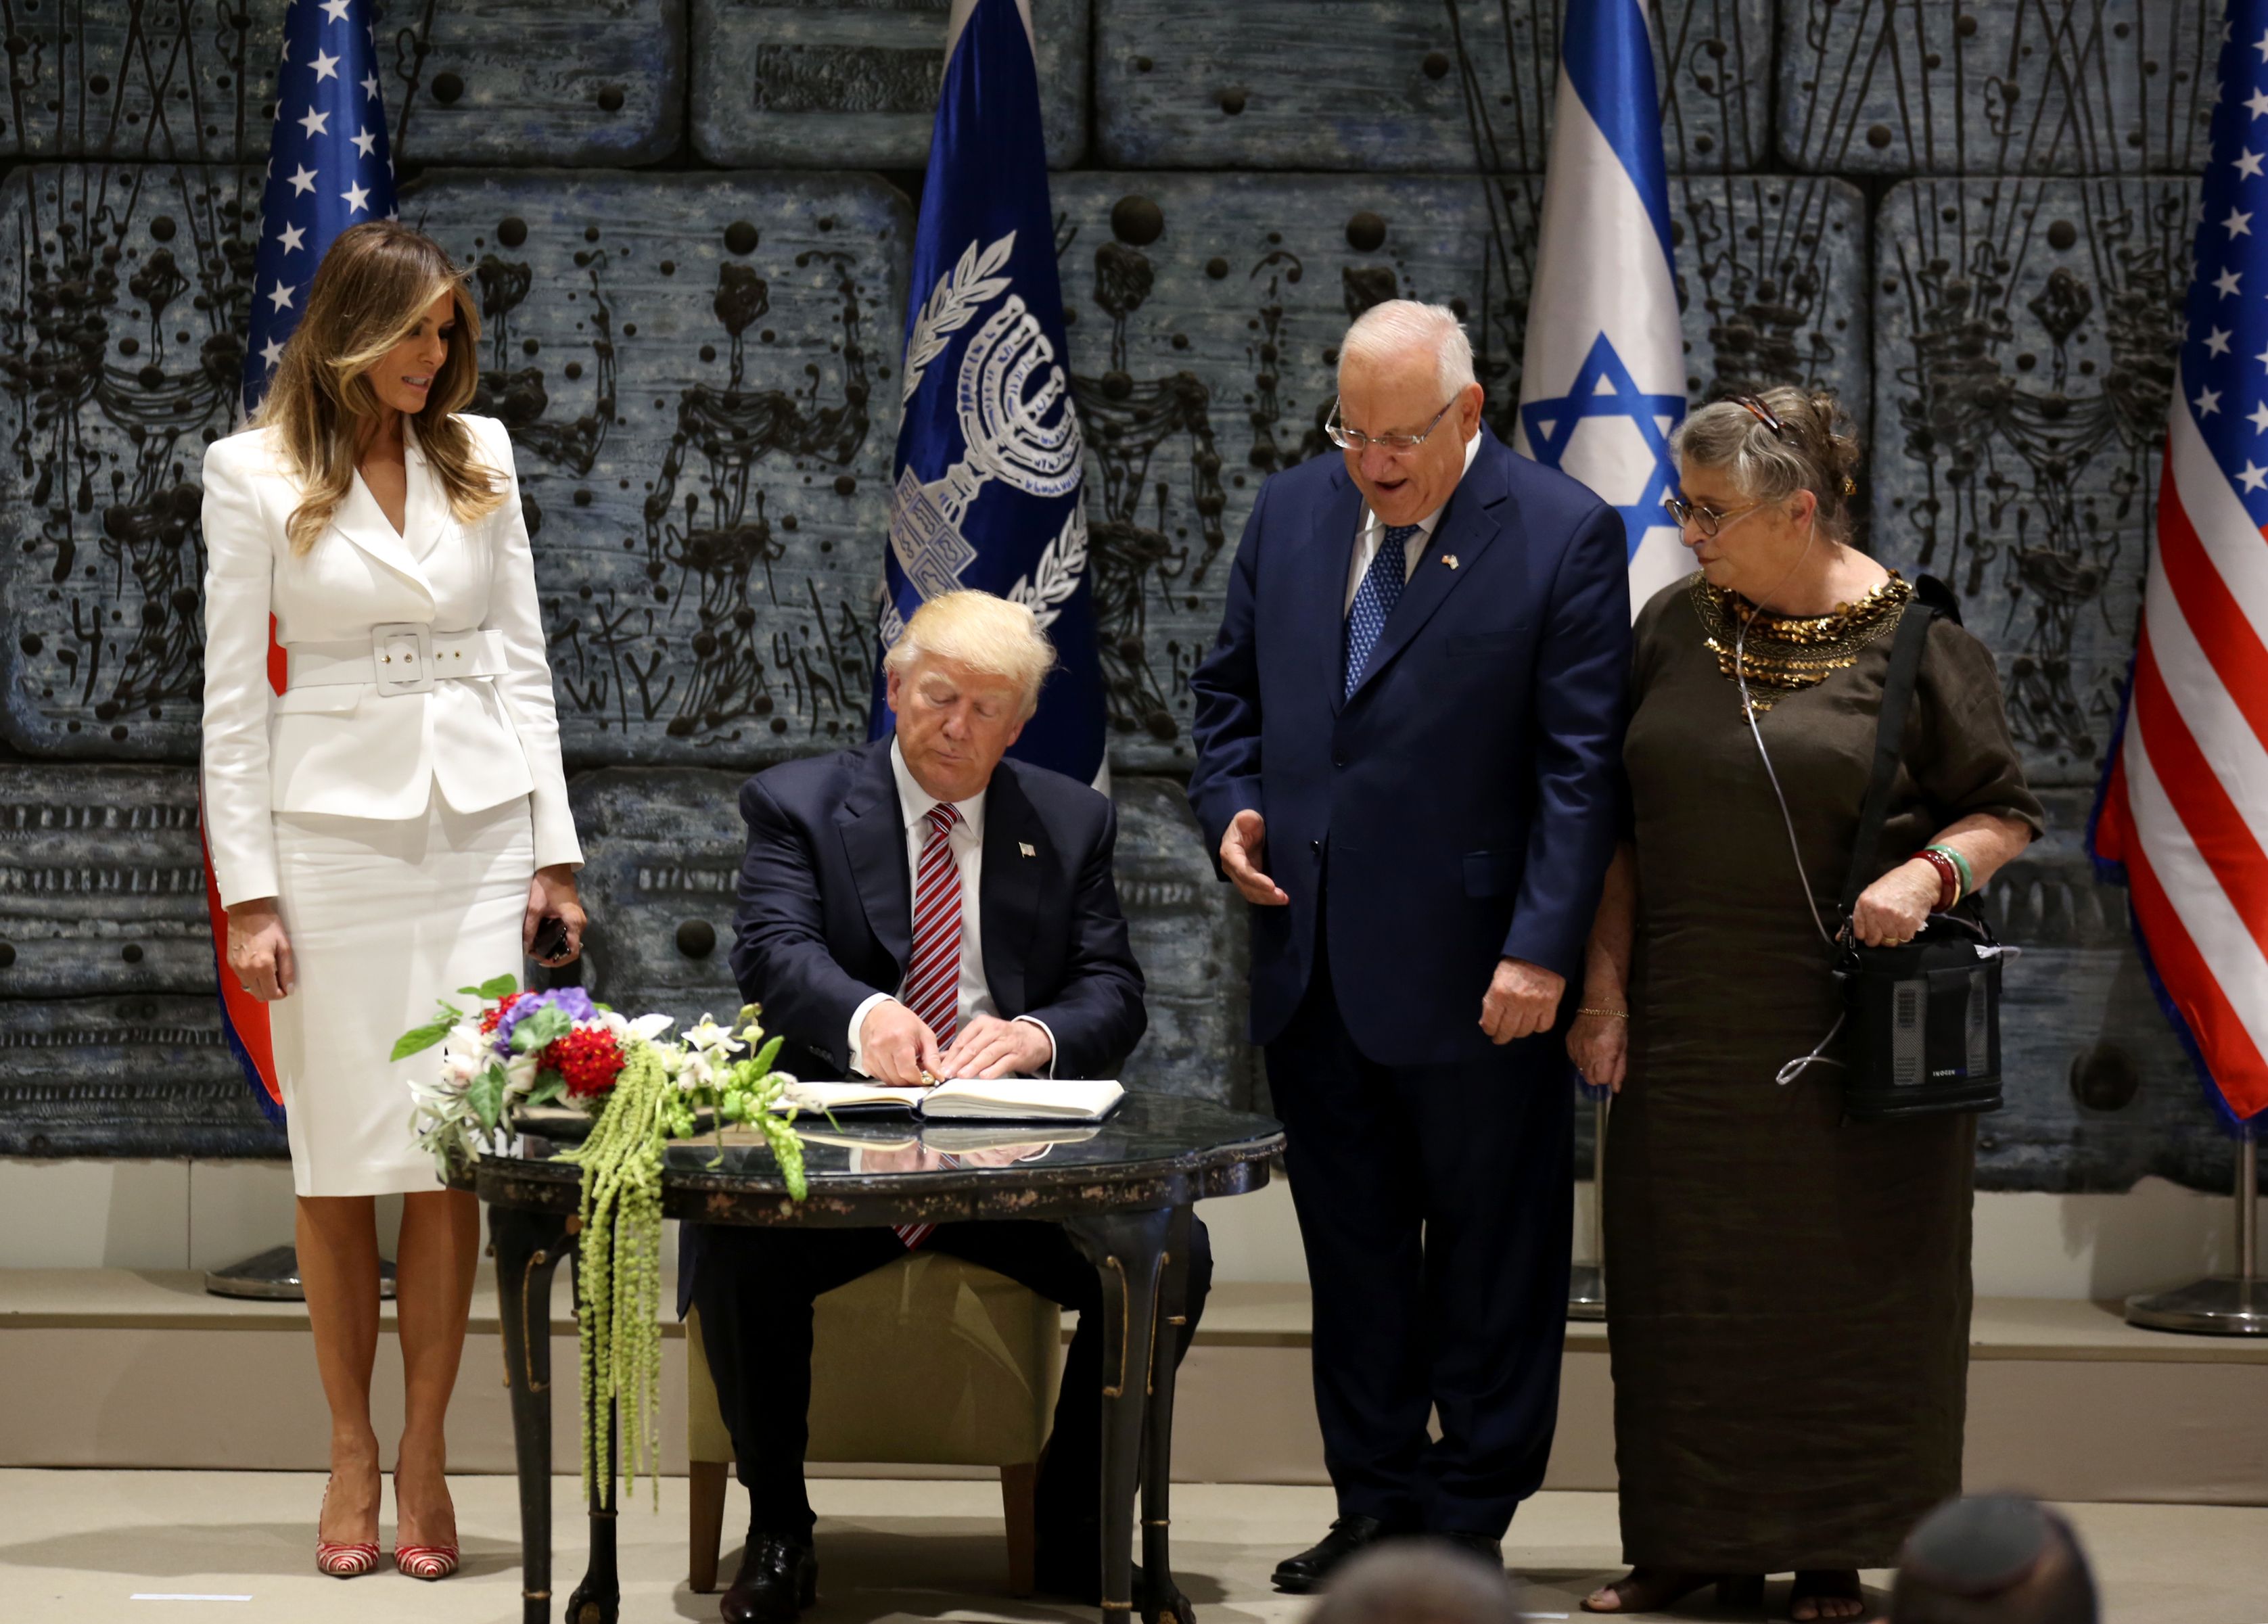 الرئيس الإسرائيلى وزوجته بجوار ترامب أثناء توقيعه فى الدفتر